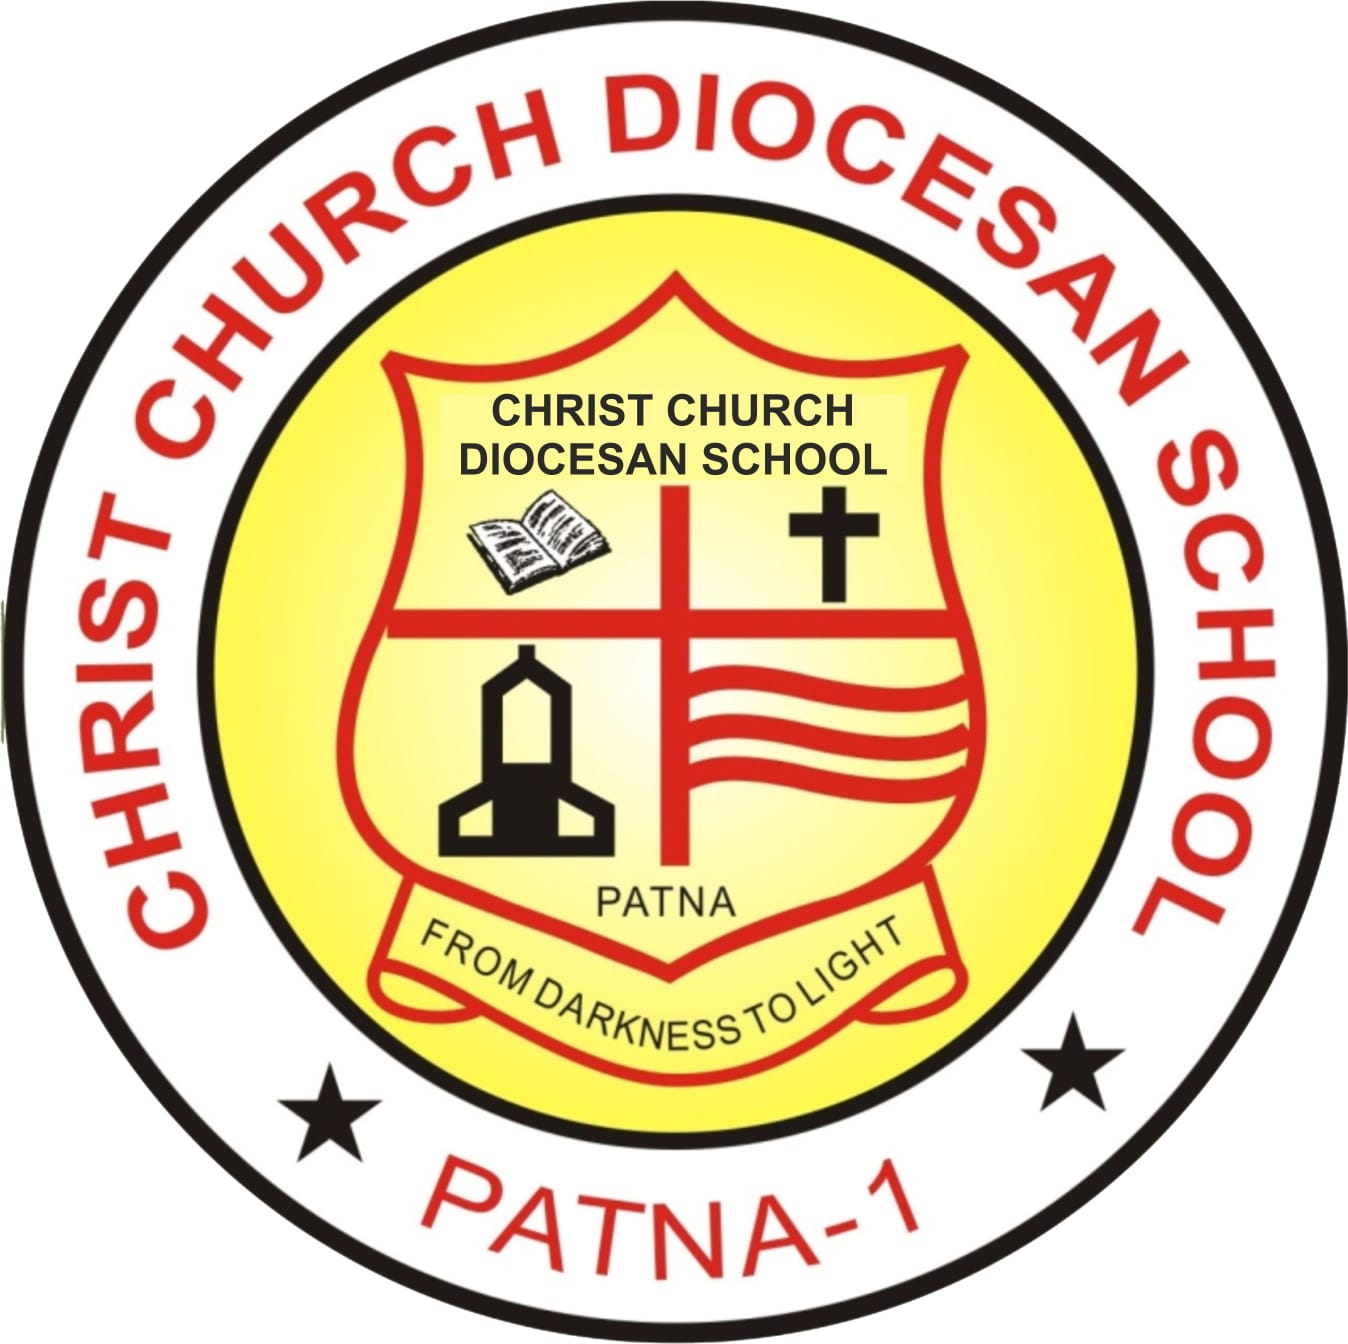 CHRIST CHURCH DIOCESAN SCHOOL